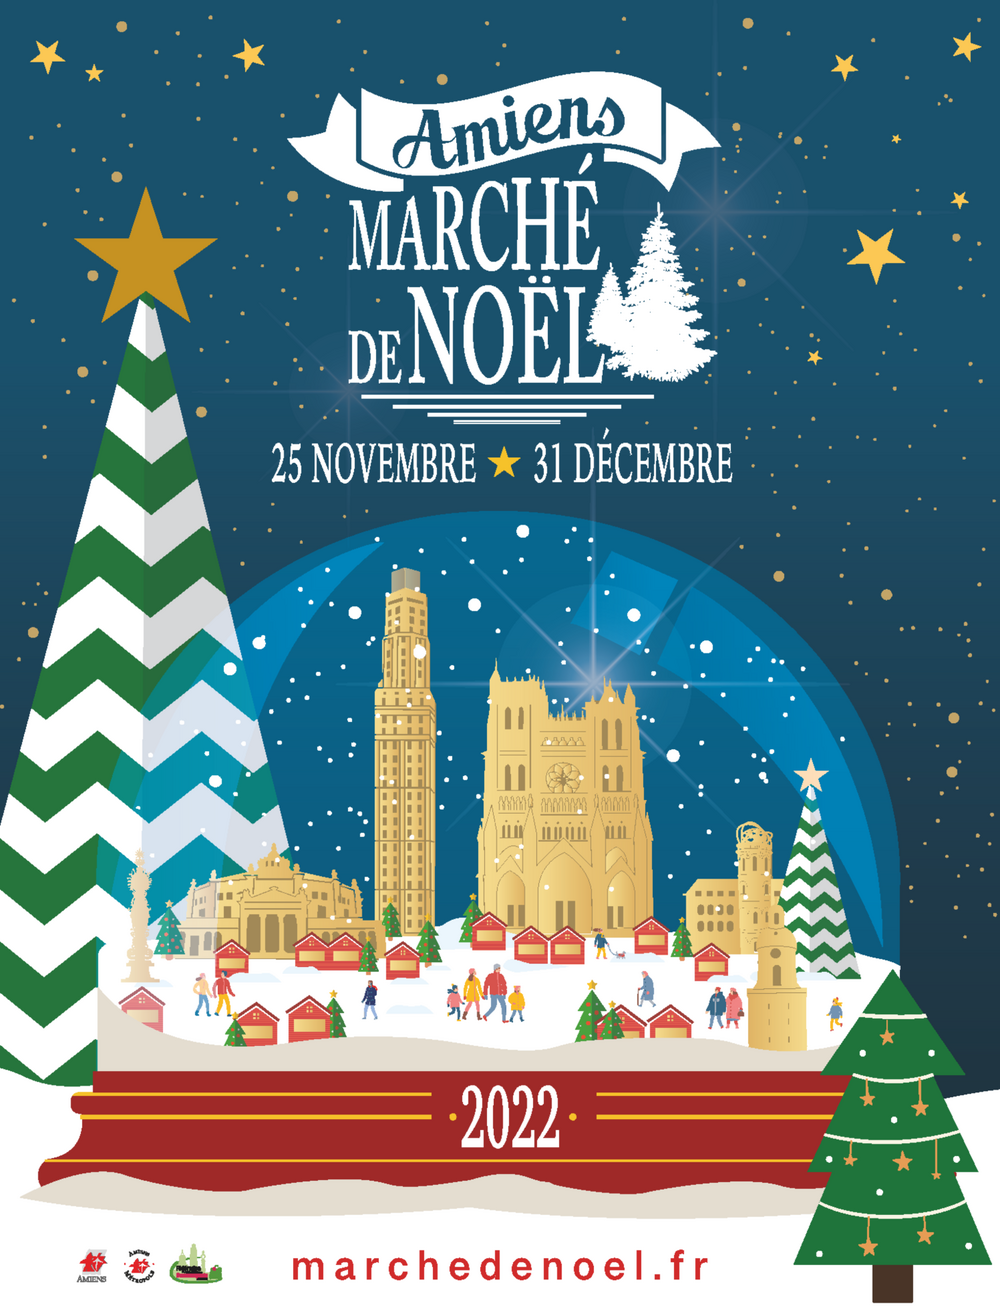 Marché de Noël Amiens 2023 dates, horaires et programme des animations